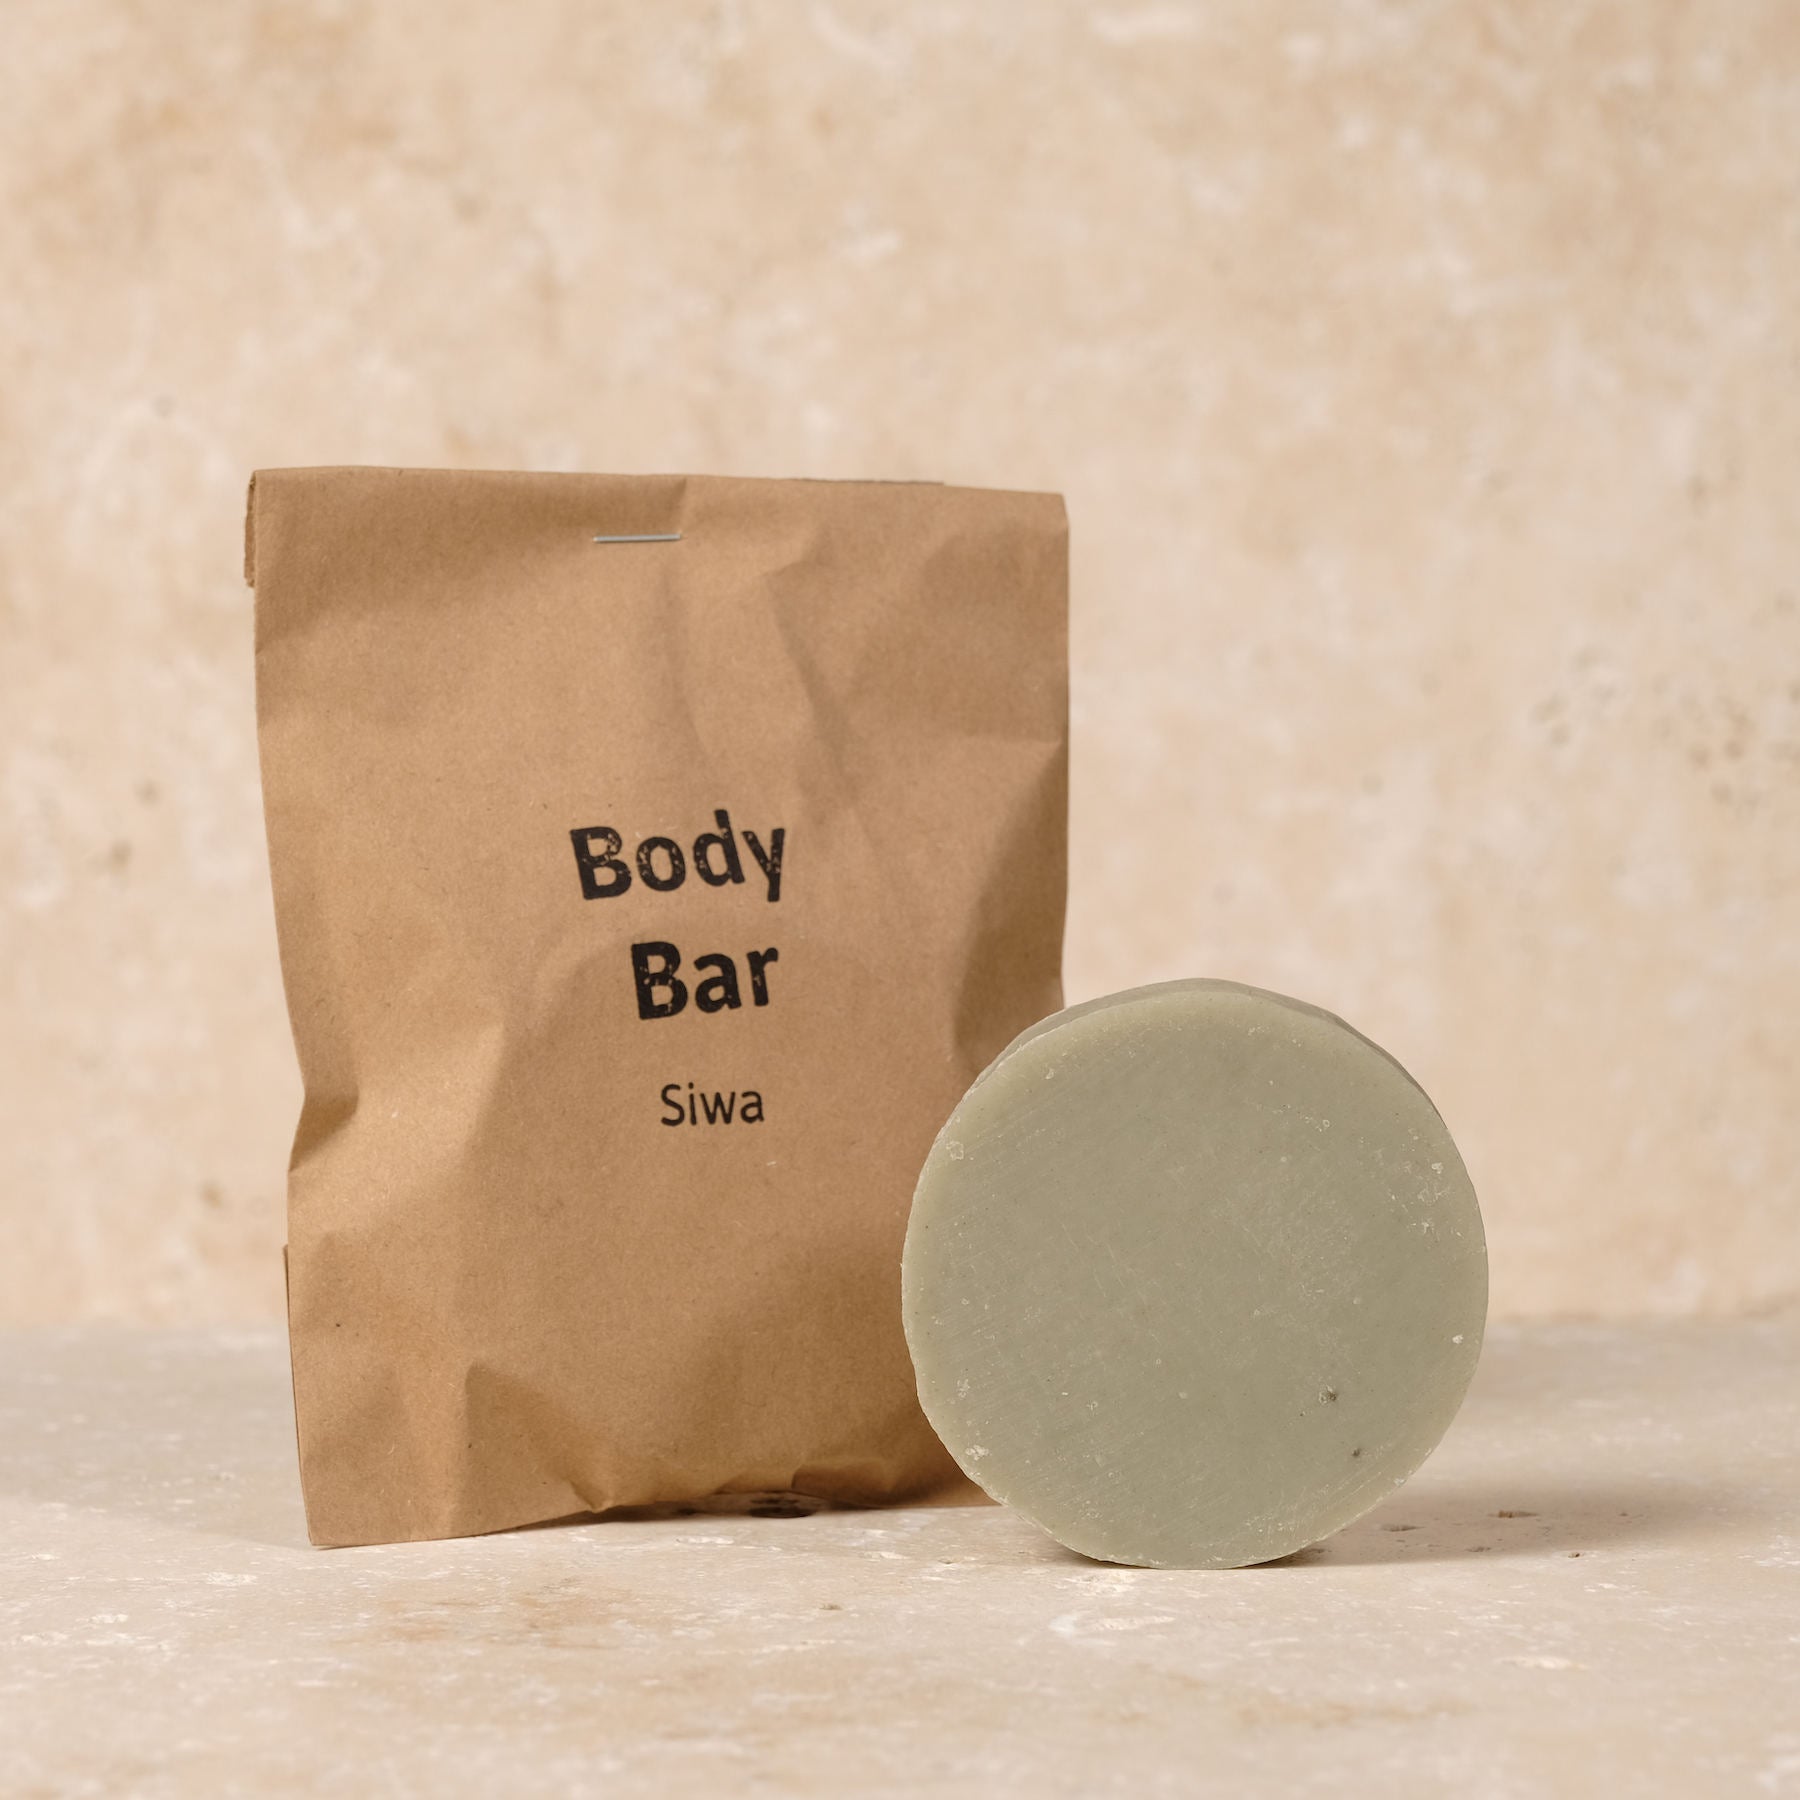 Savon pour le corps et le visage - Body Bar - Siwa fabriqué en Suisse